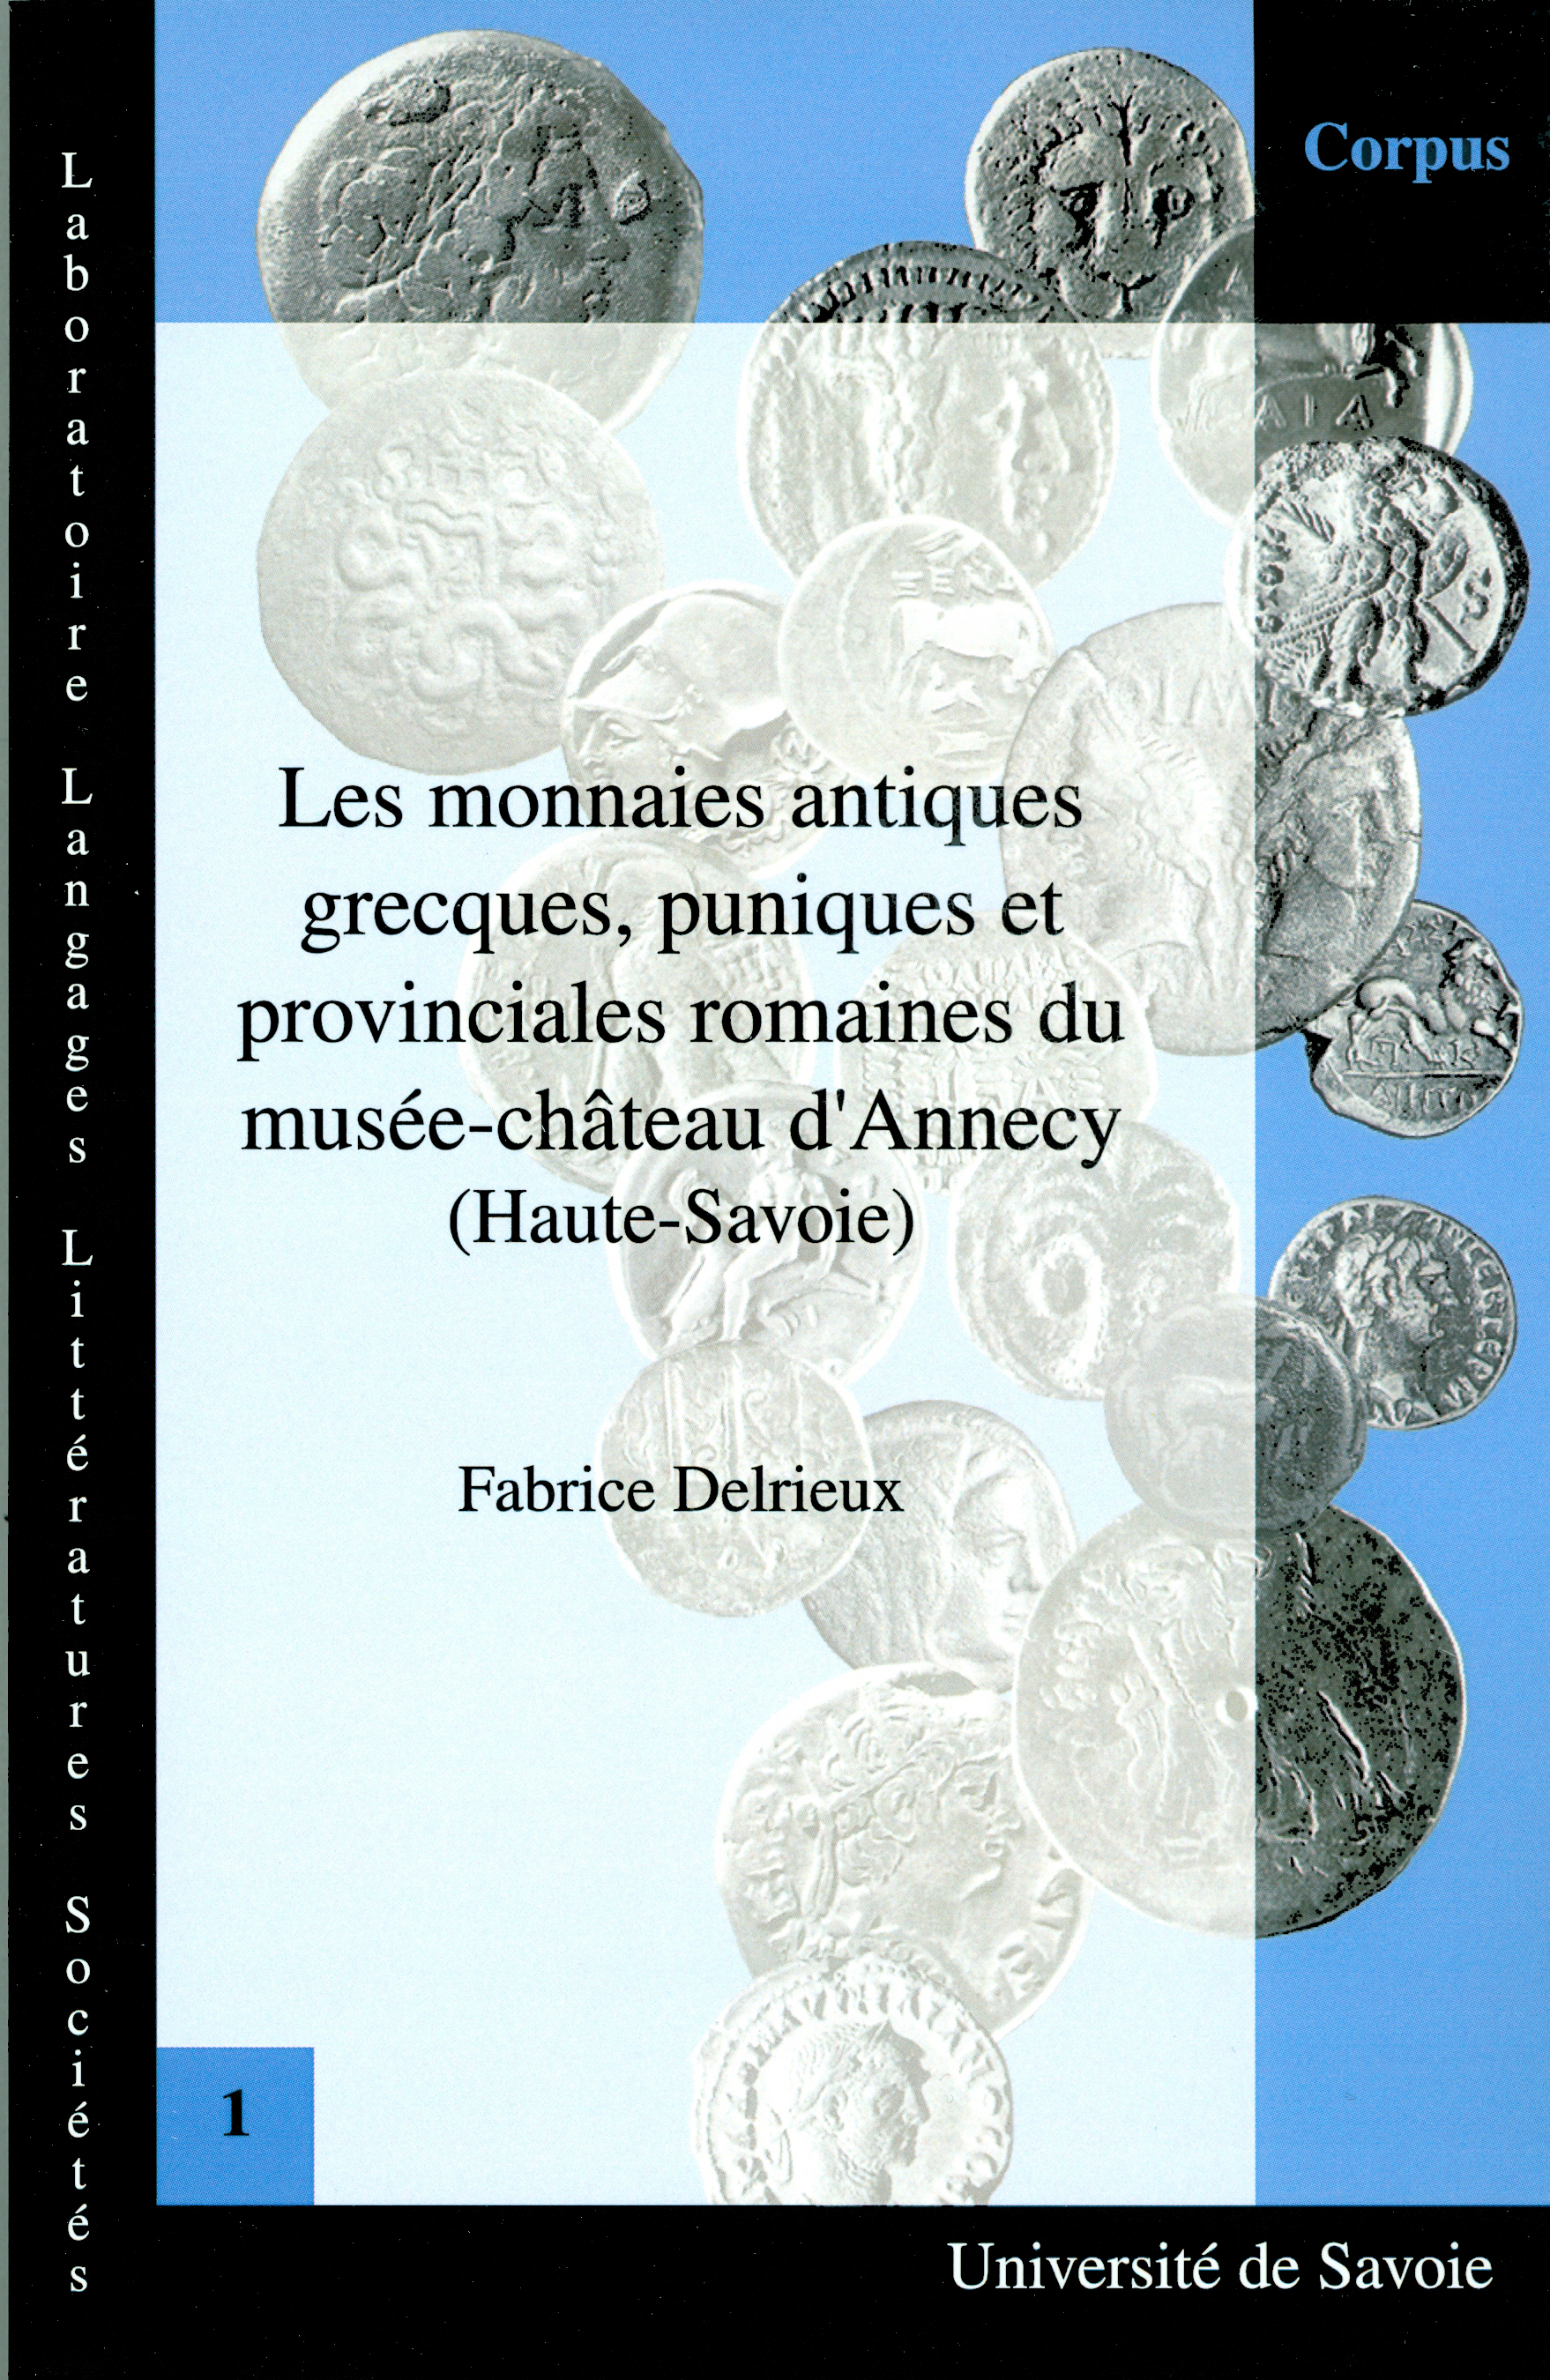 Les monnaies antiques grecques, puniques et provinciales romaines du musÃ©e-chÃ¢teau d'Annecy